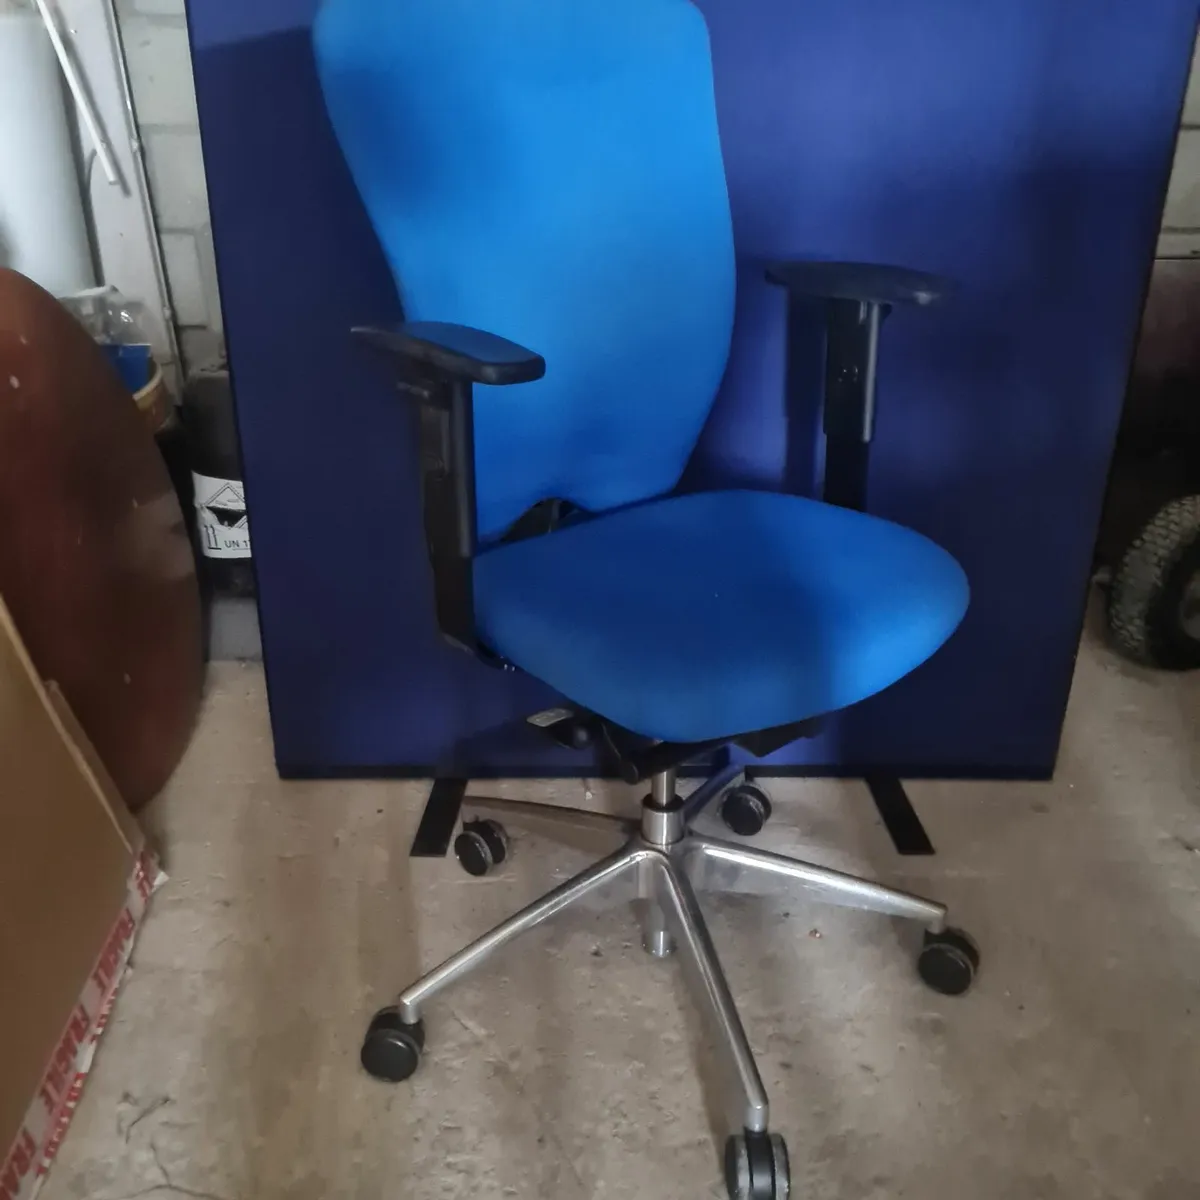 15 xBoss komac ergonomic office chairs